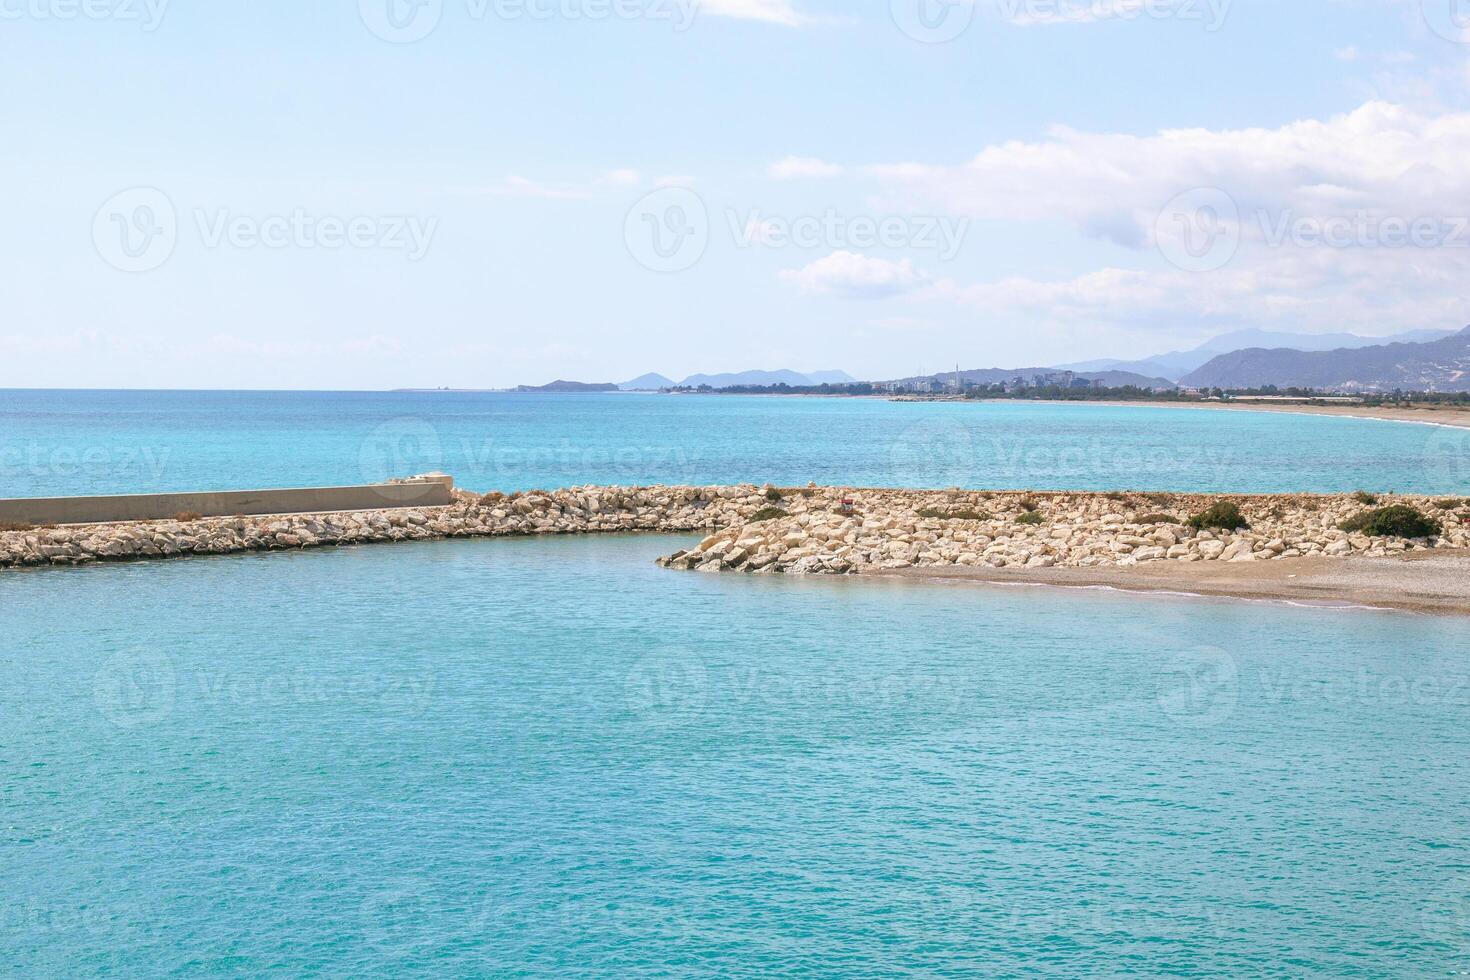 Visualizza su roccioso spiaggia con chiaro blu mare e frangiflutti a il soleggiato giorno. mediterraneo mare vicino per demre, tacchino. foto